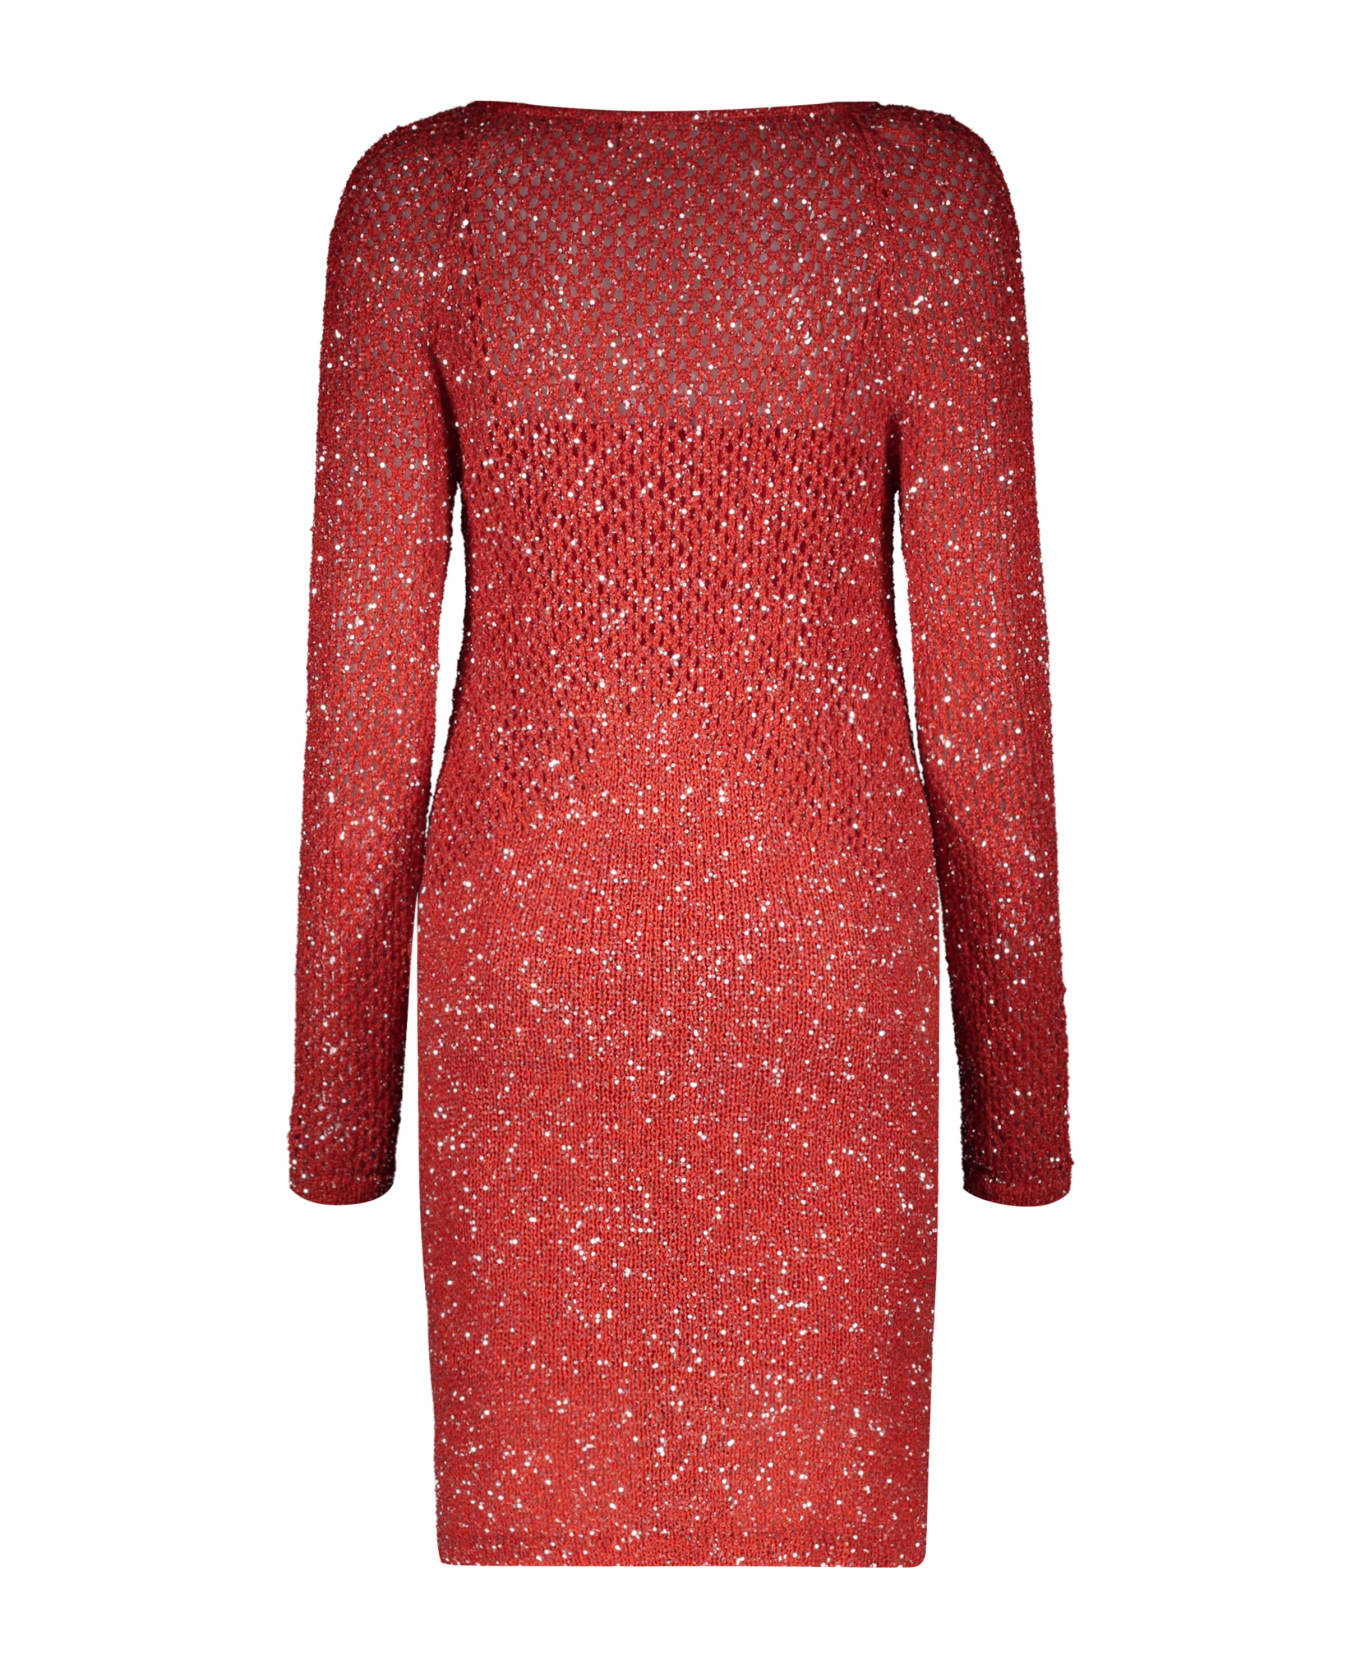 Missoni Sheath Dress - red